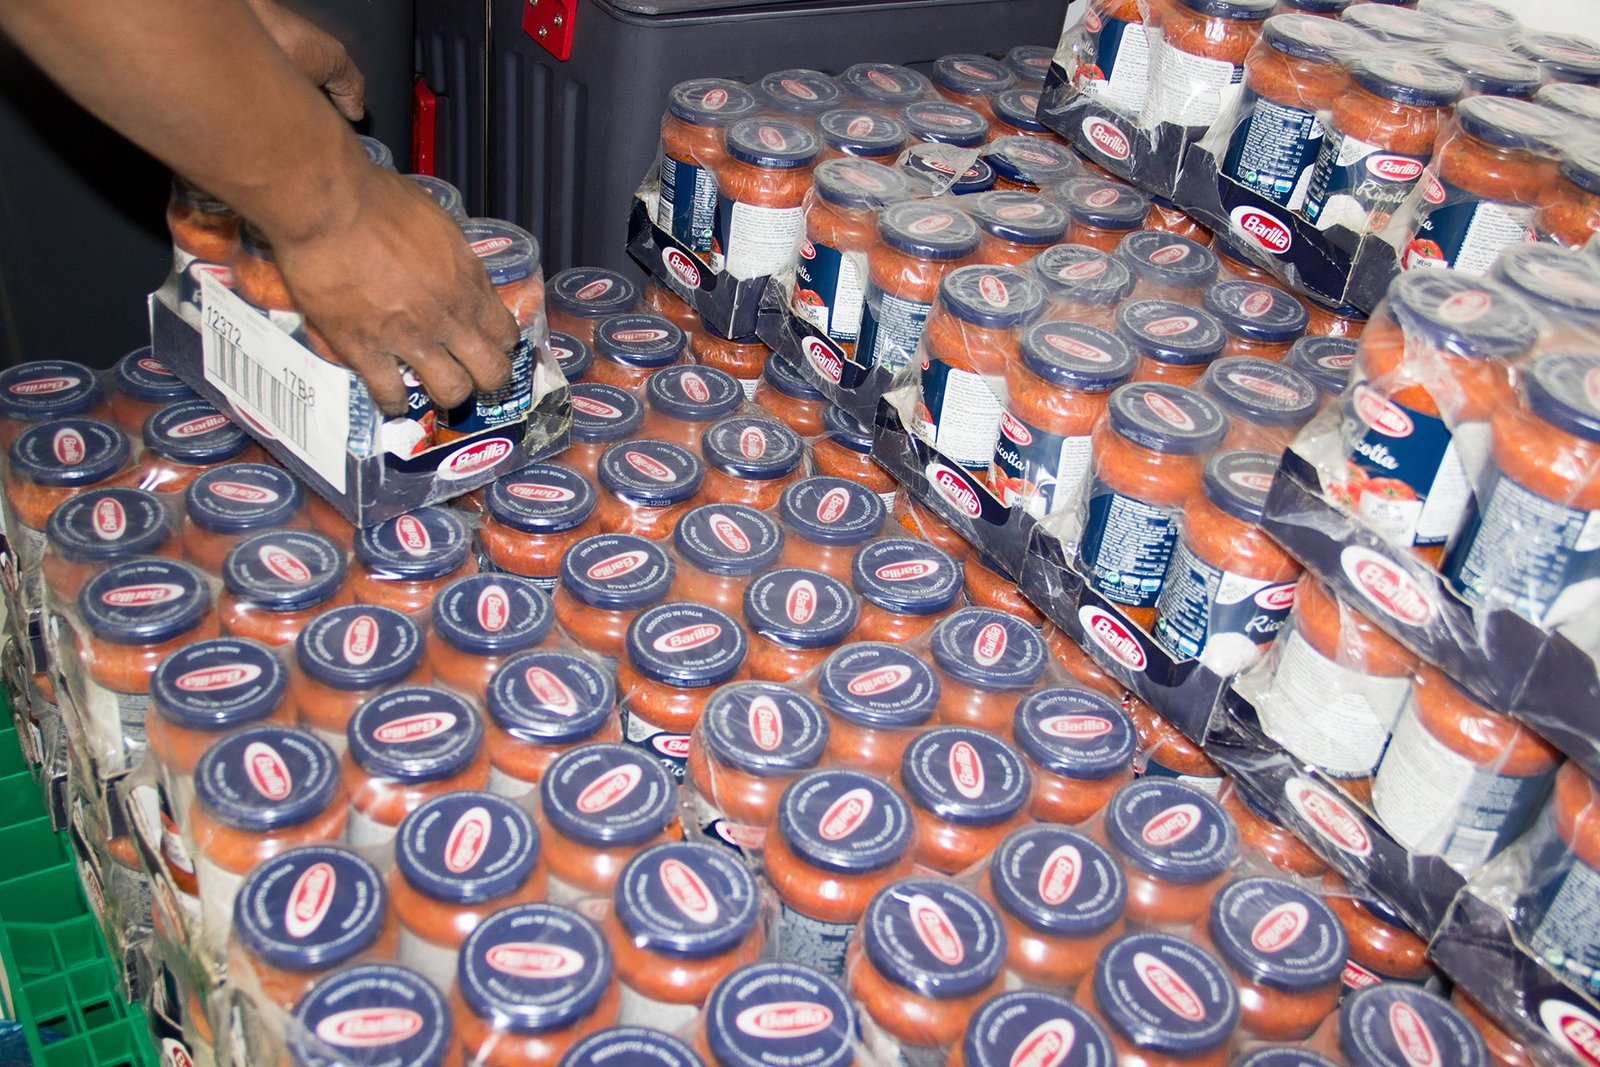 ميار تقدم لمستفيدي إطعام 120 الف عبوة من منتجات “باريلا”